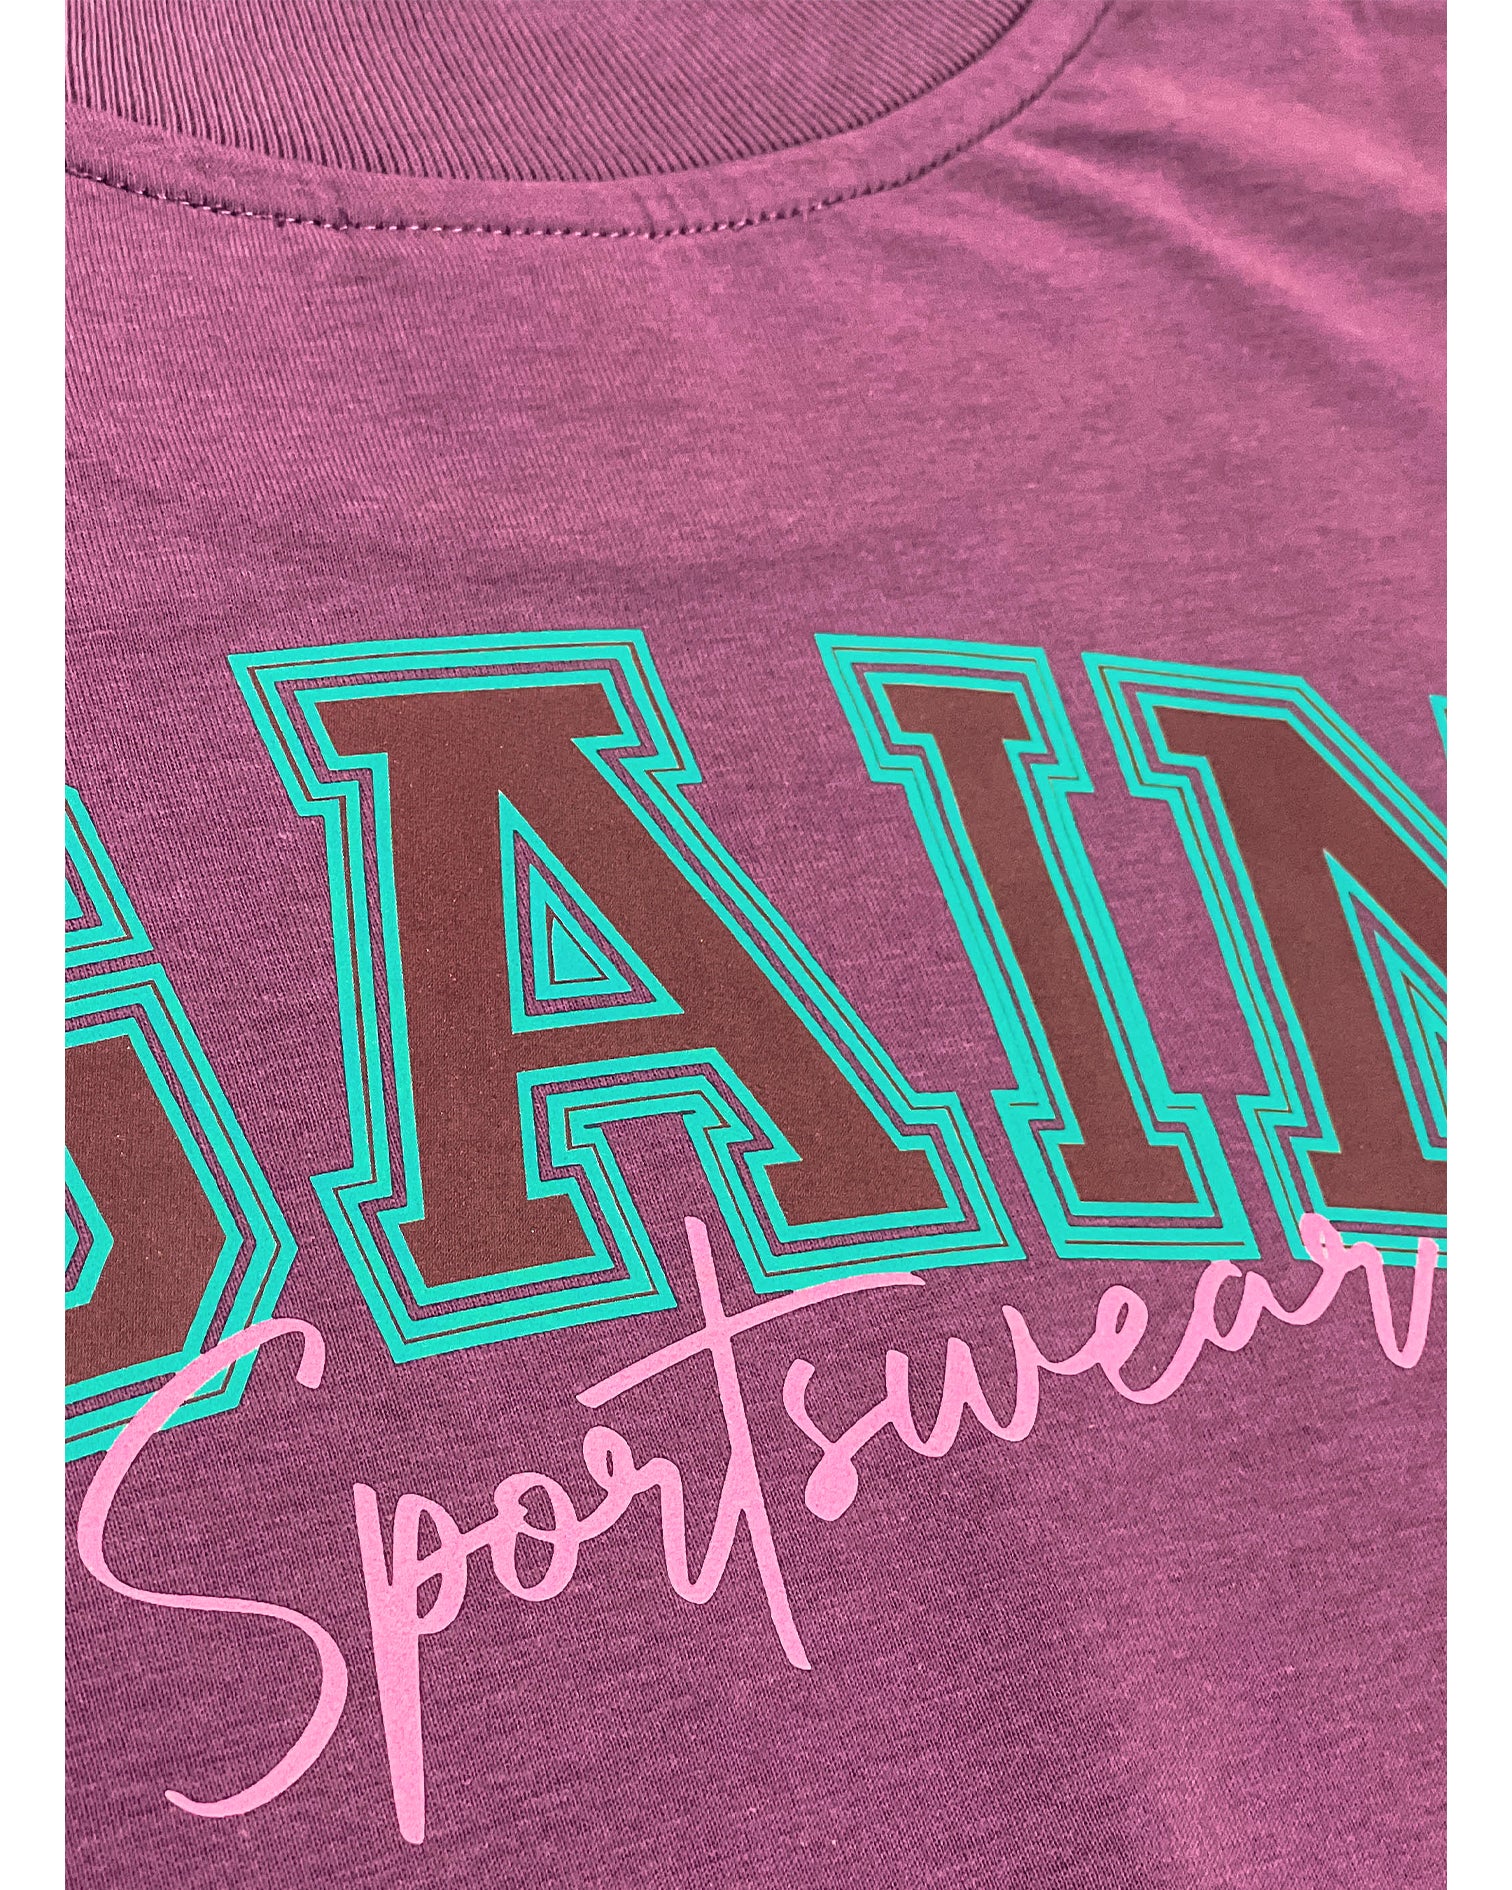 Detail Aufnahme vom rosanem "Sportswear" Schriftzug auf der Rückseite des T-Shirts